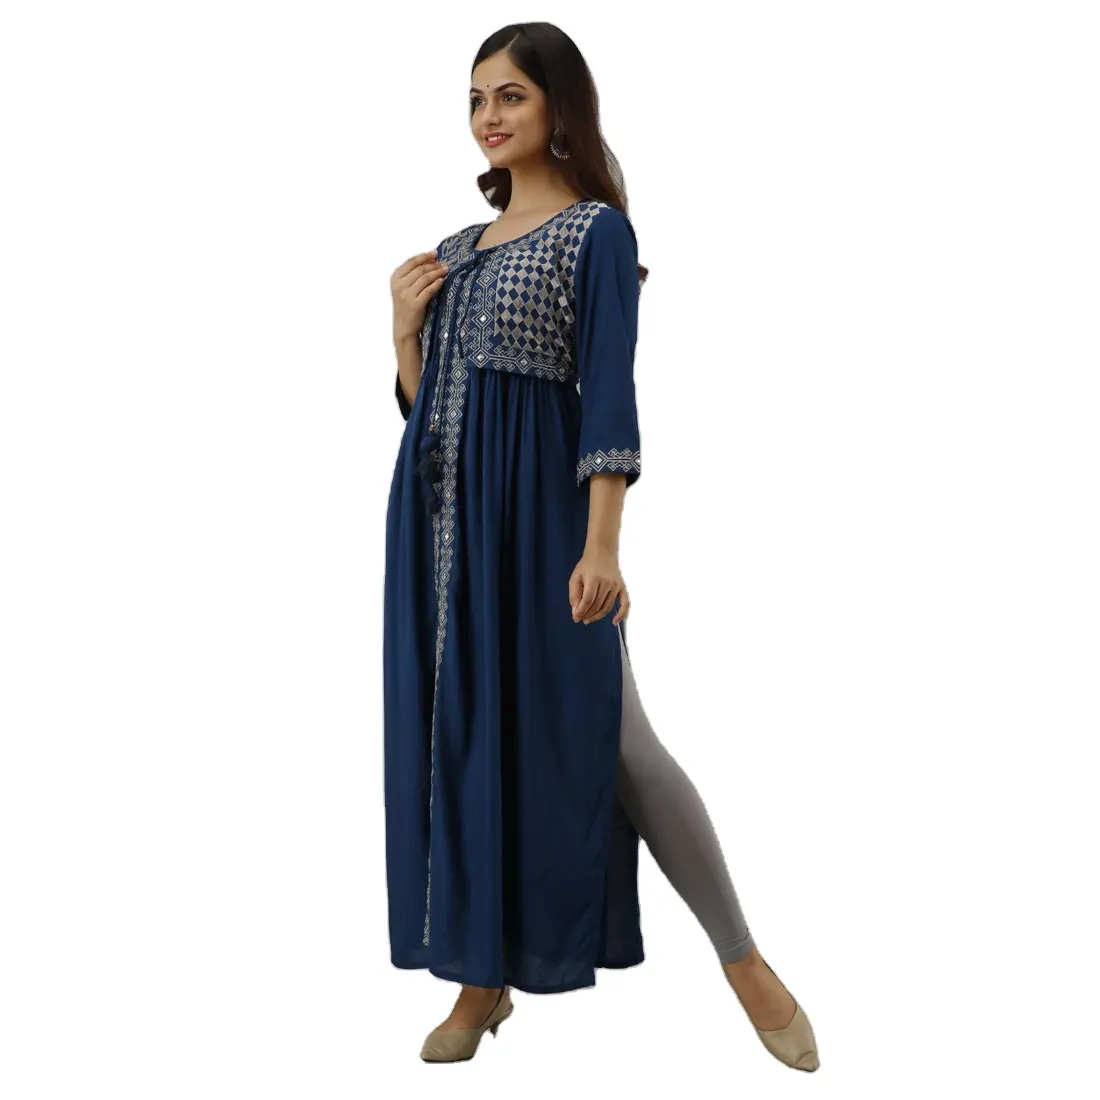 Nouveau look tendance saisonnier porter coton rayonne imprimé Kurta Collection pour les filles indiennes readymade pas cher bas prix en gros